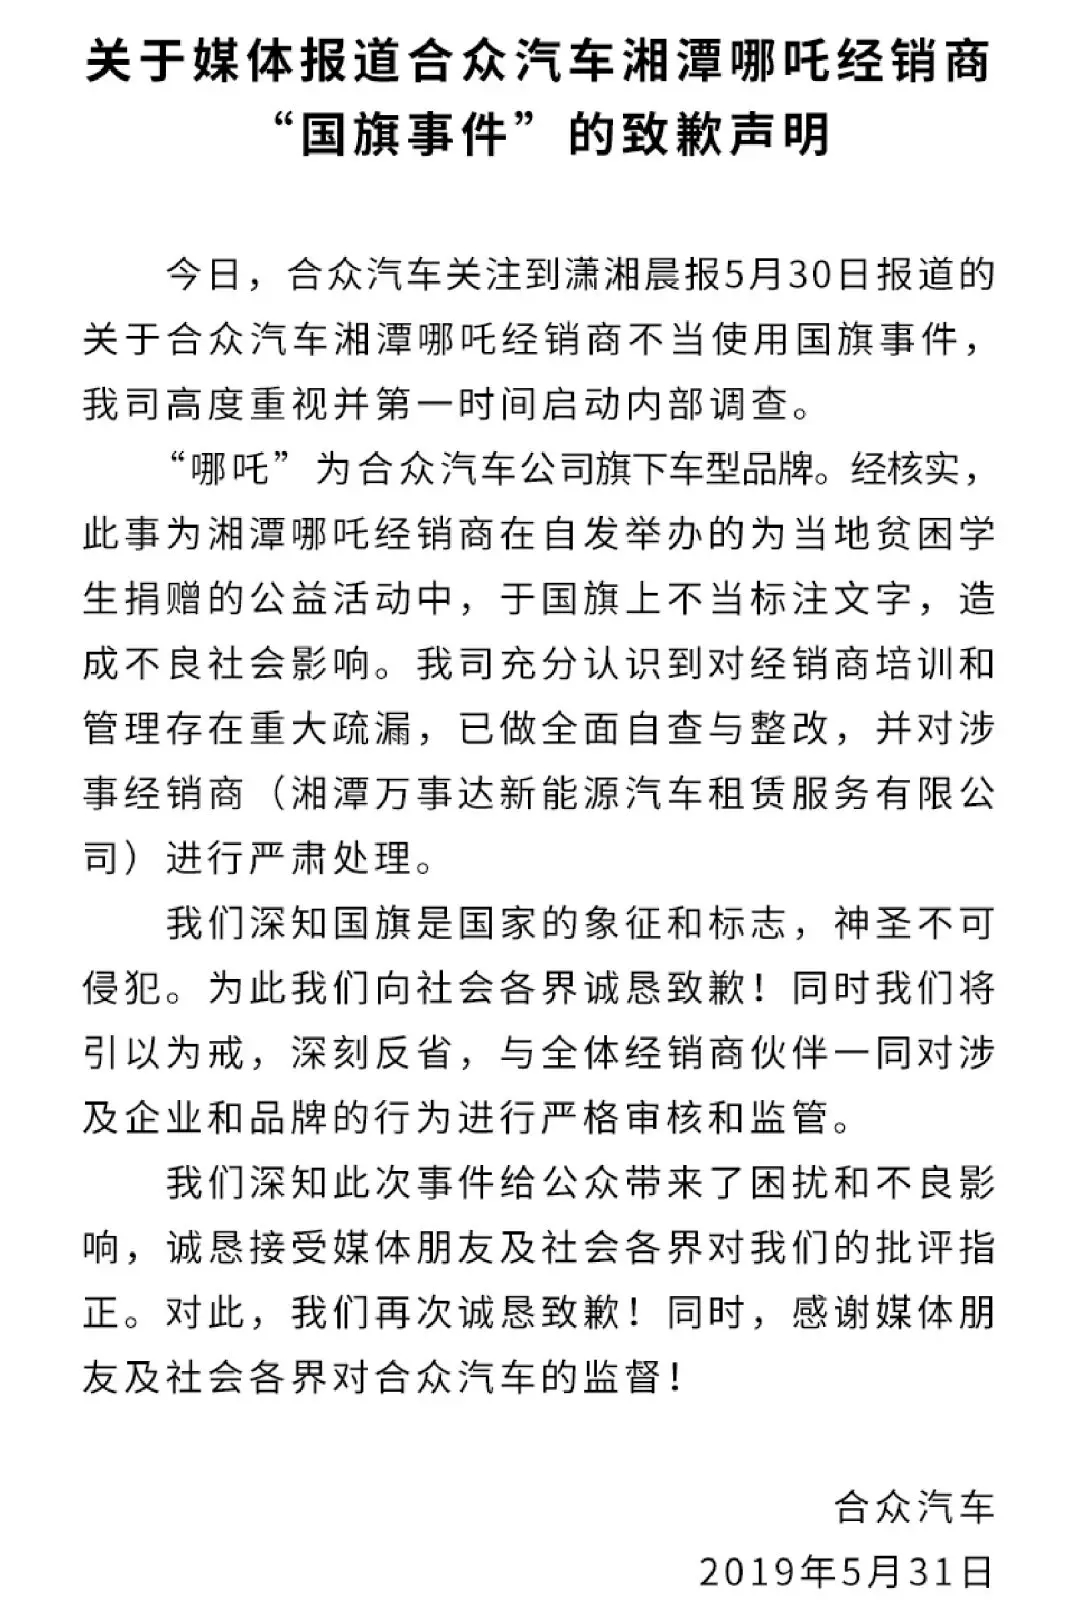  　　只是根据张兰独子汪小菲的说法，俏江南根本没签什么对赌协议，一切都是媒体造谣。